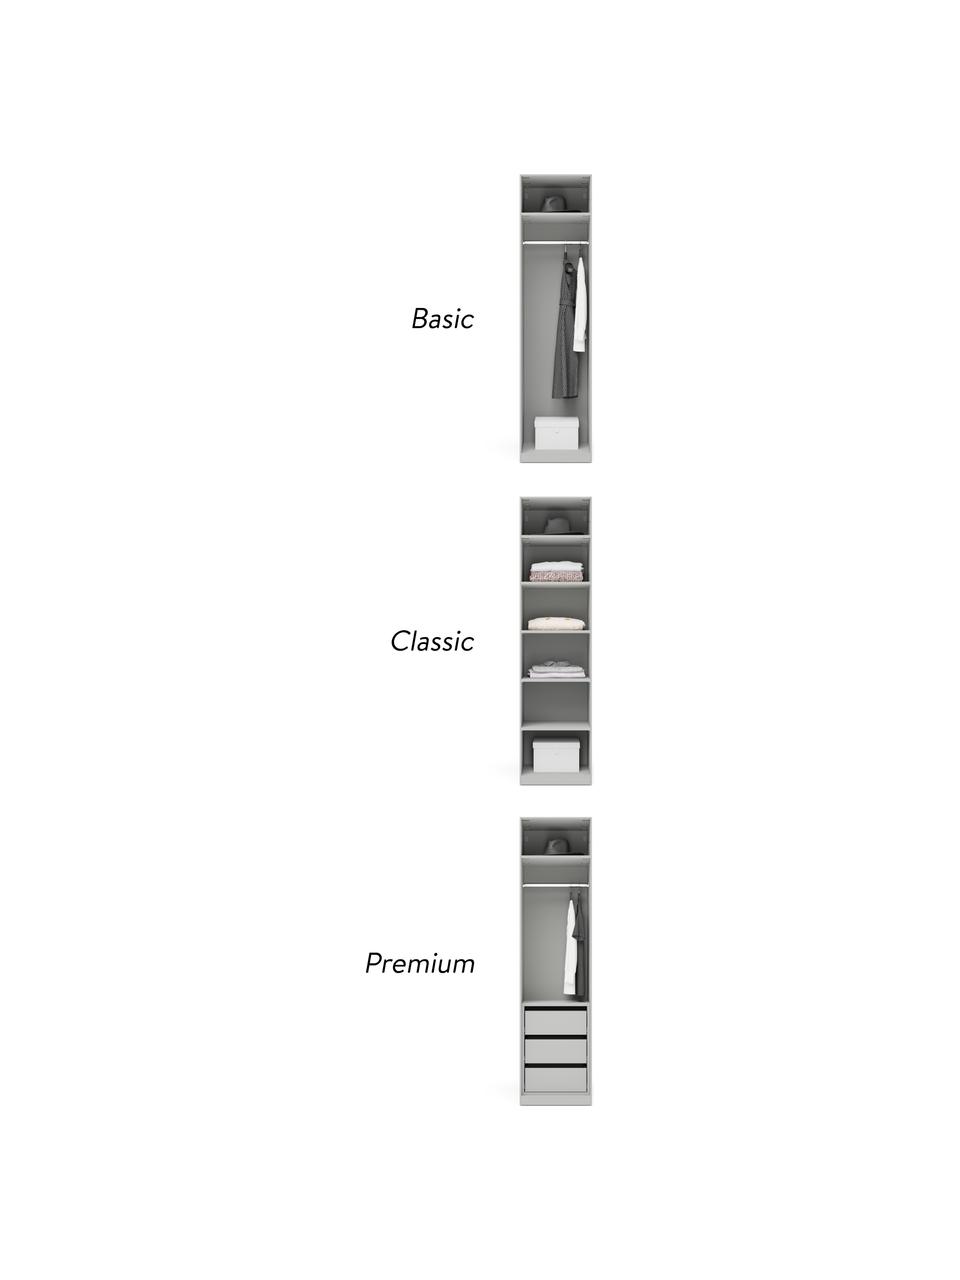 Modulaire draaideurkast Leon in grijs, 50 cm breed, diverse varianten, Frame: met melamine beklede spaa, Grijs, Basis interieur, hoogte 200 cm